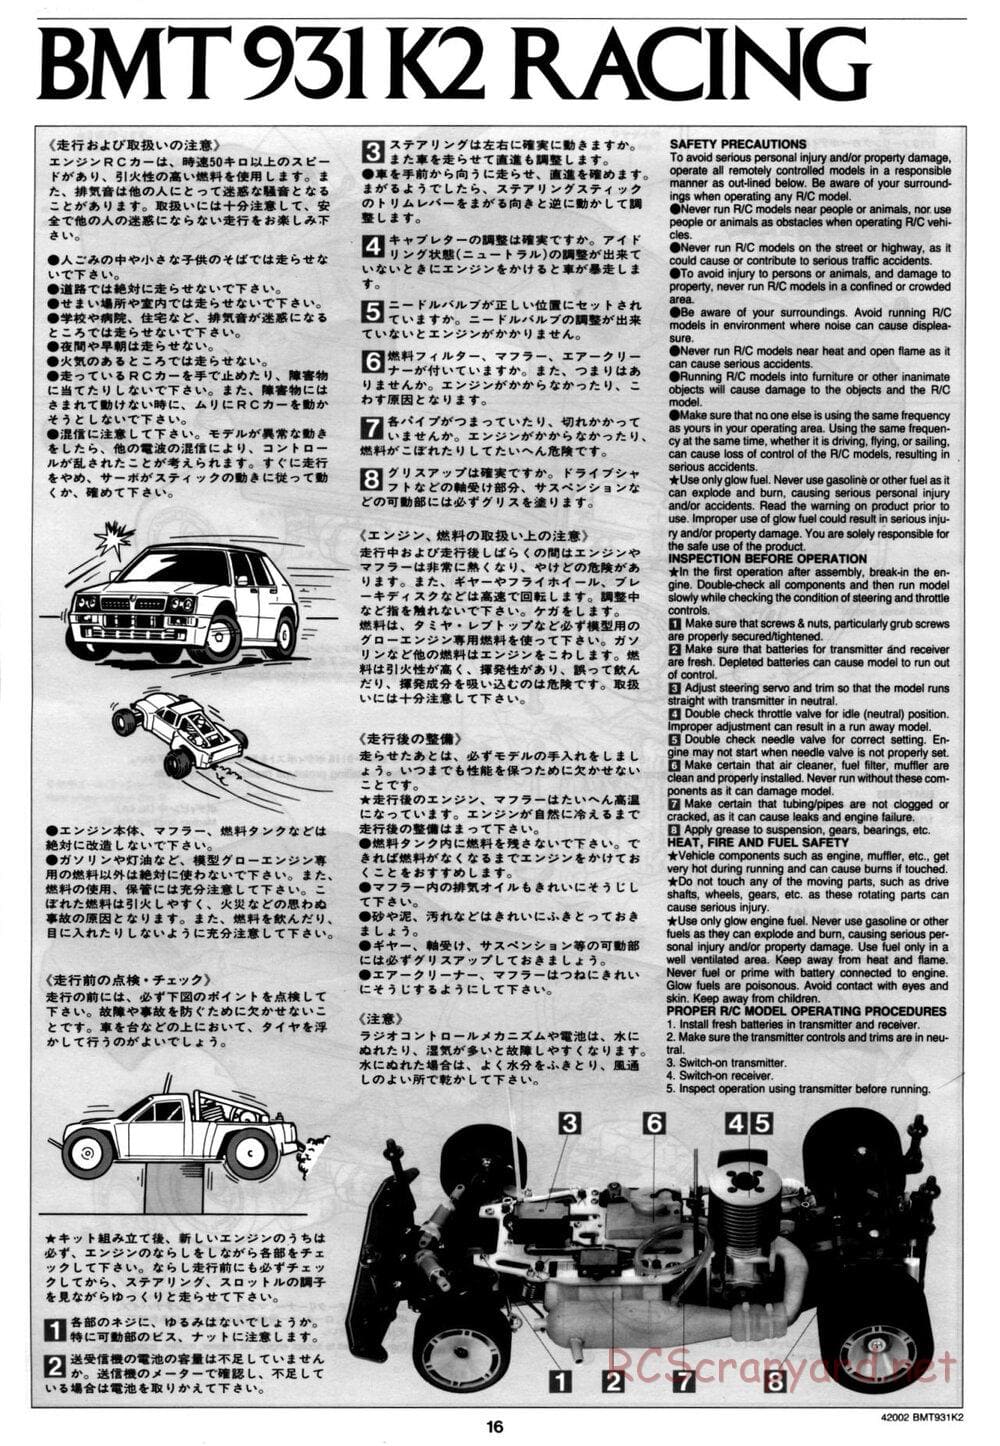 Tamiya - BMT 931 K2 Racing Chassis - Manual - Page 16